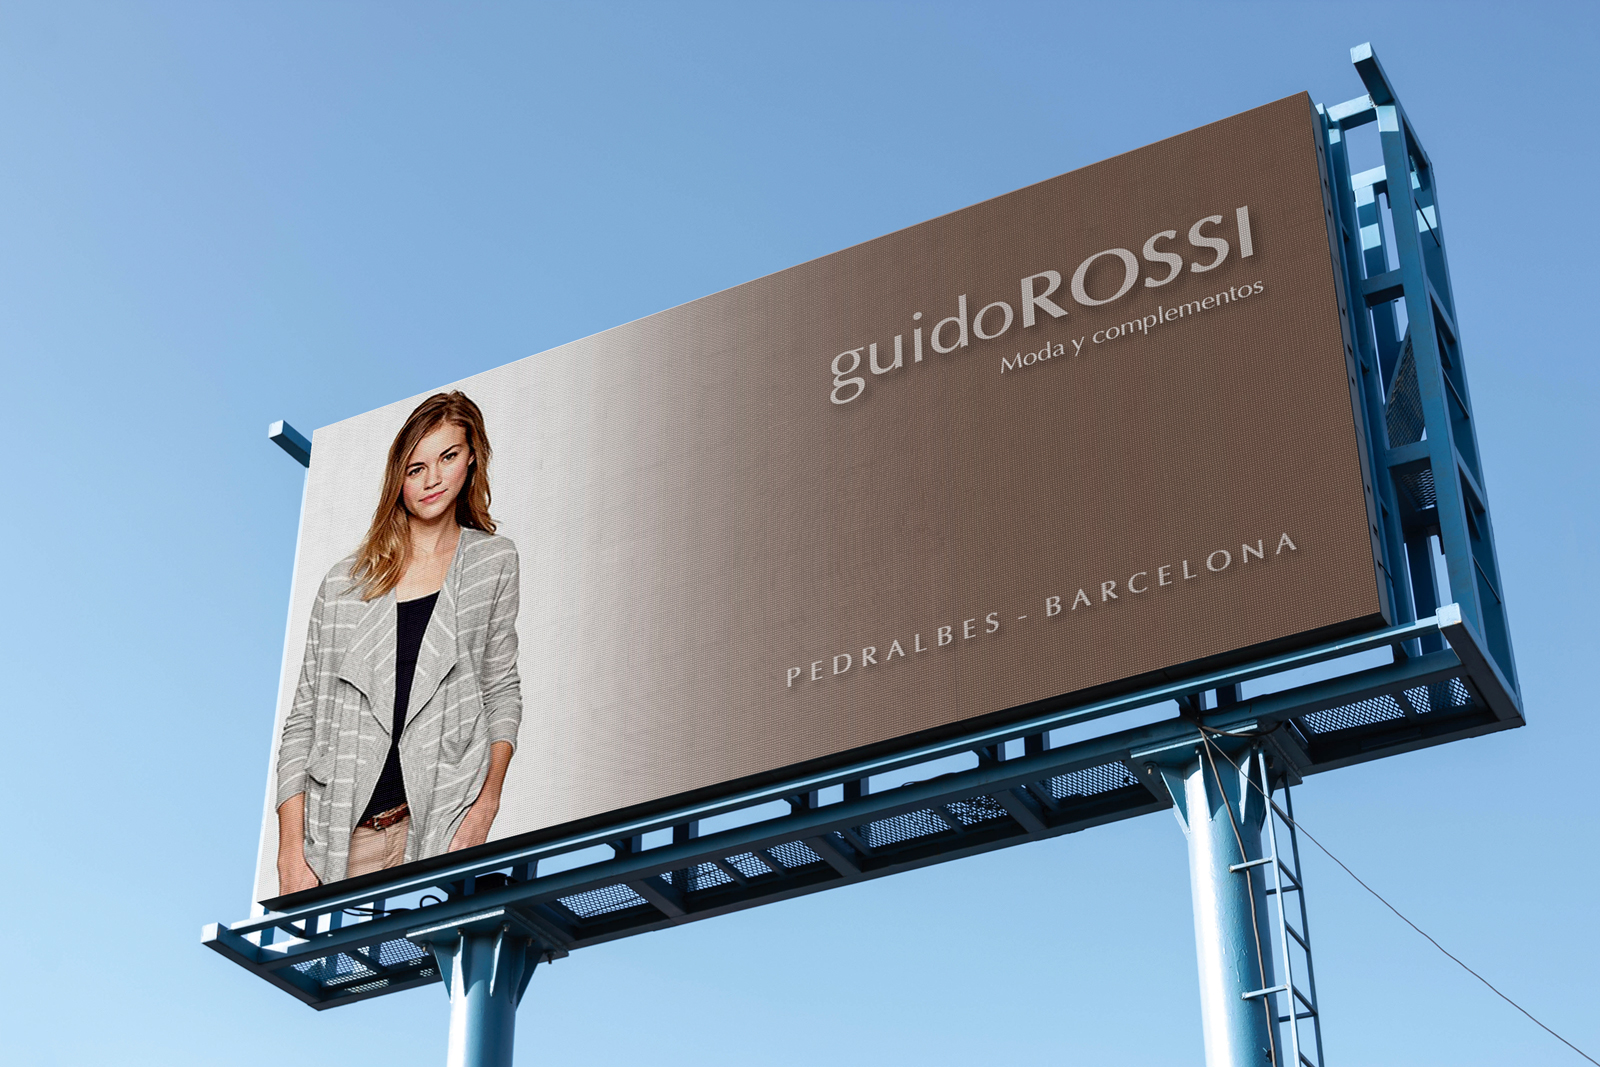 Diseño gráfico y creativo de vallas publicitarias para GUIDO ROSSI